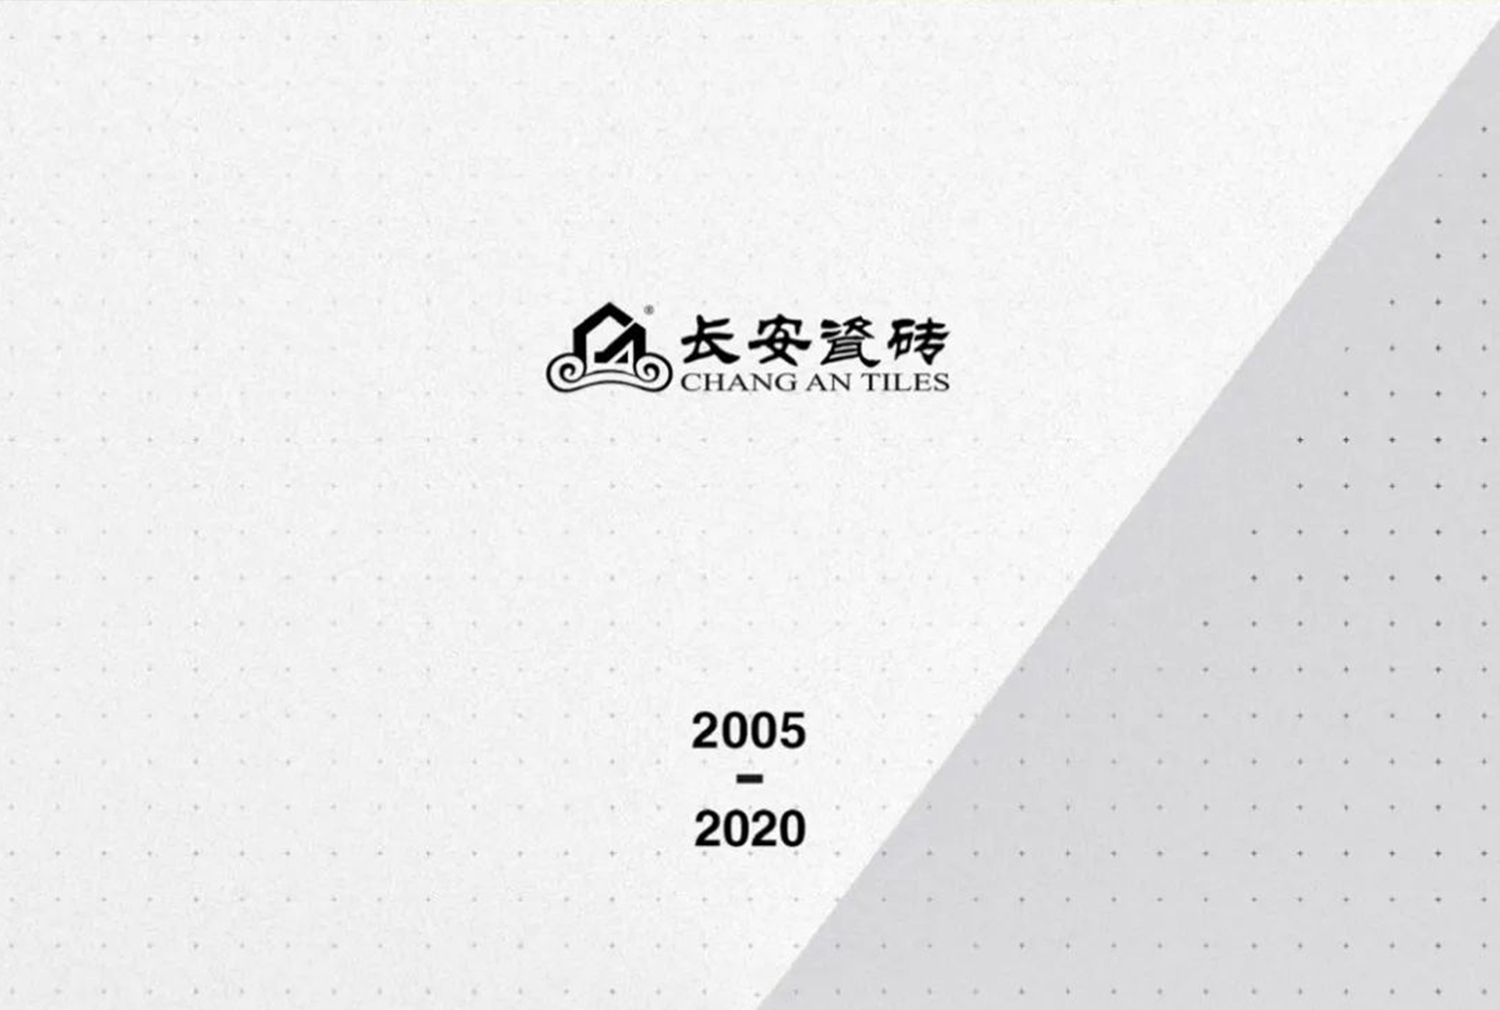 驭梦前行——2020年ty8天游平台登录邀您共启财富大门